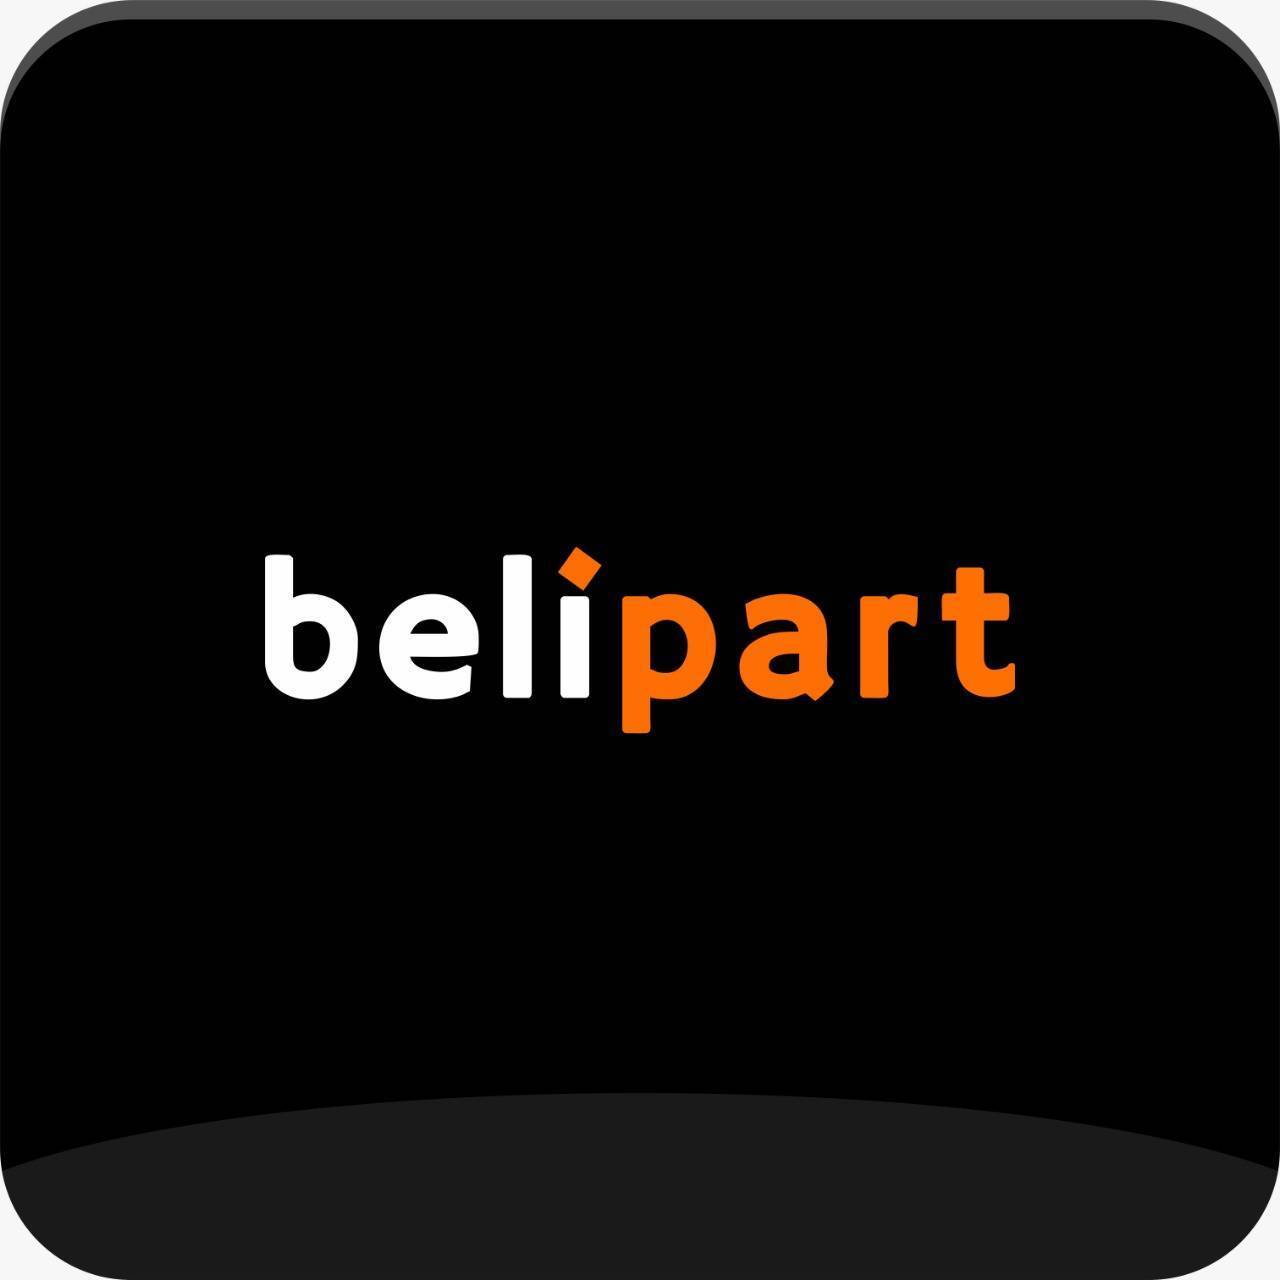 Belipart